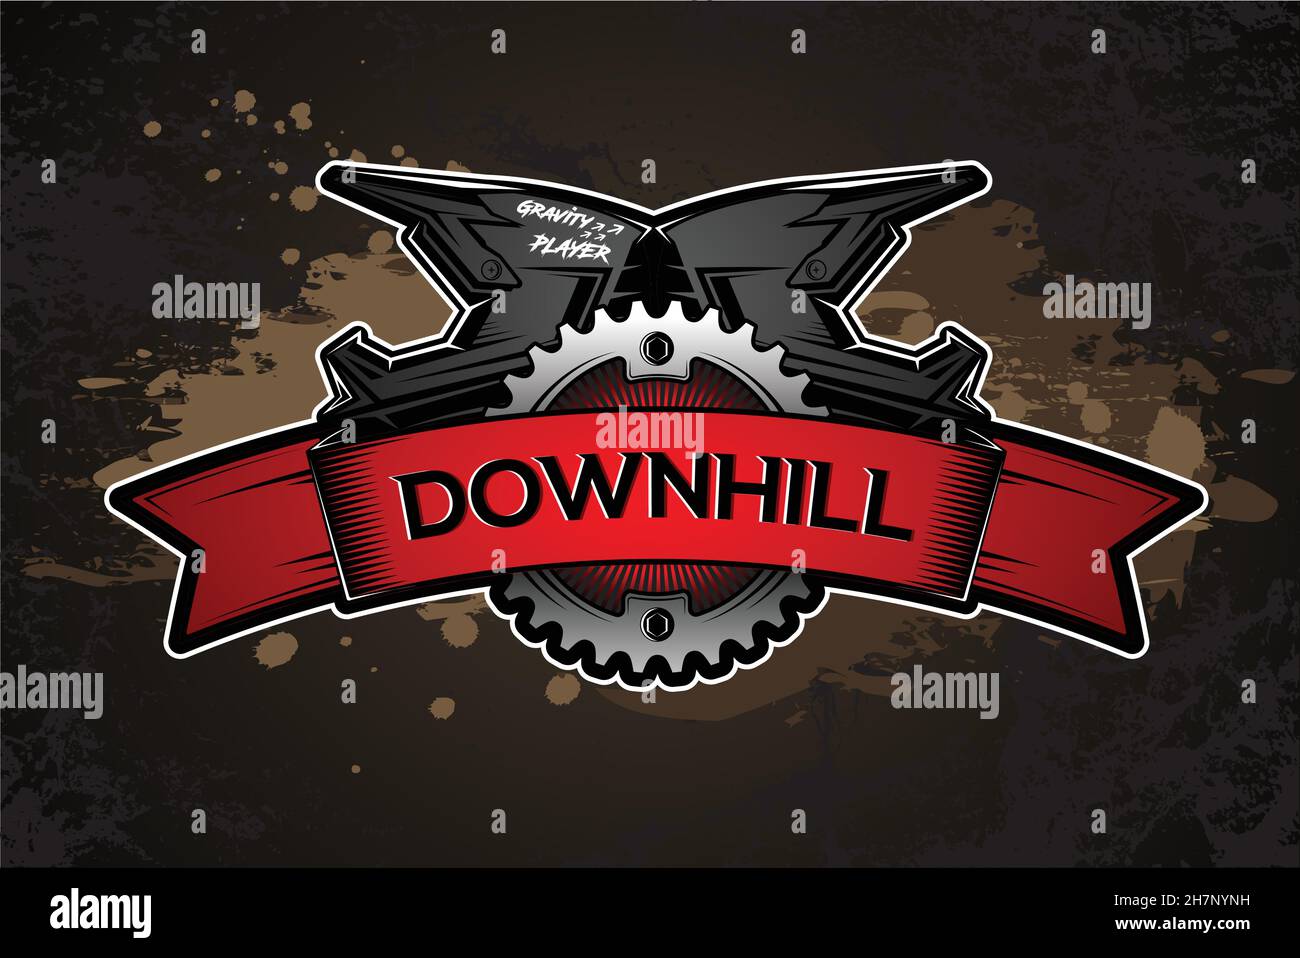 Downhill Motocros Label Design. Full Face Helmet. Mountain biking. Vector Ilustration. Stock Vector